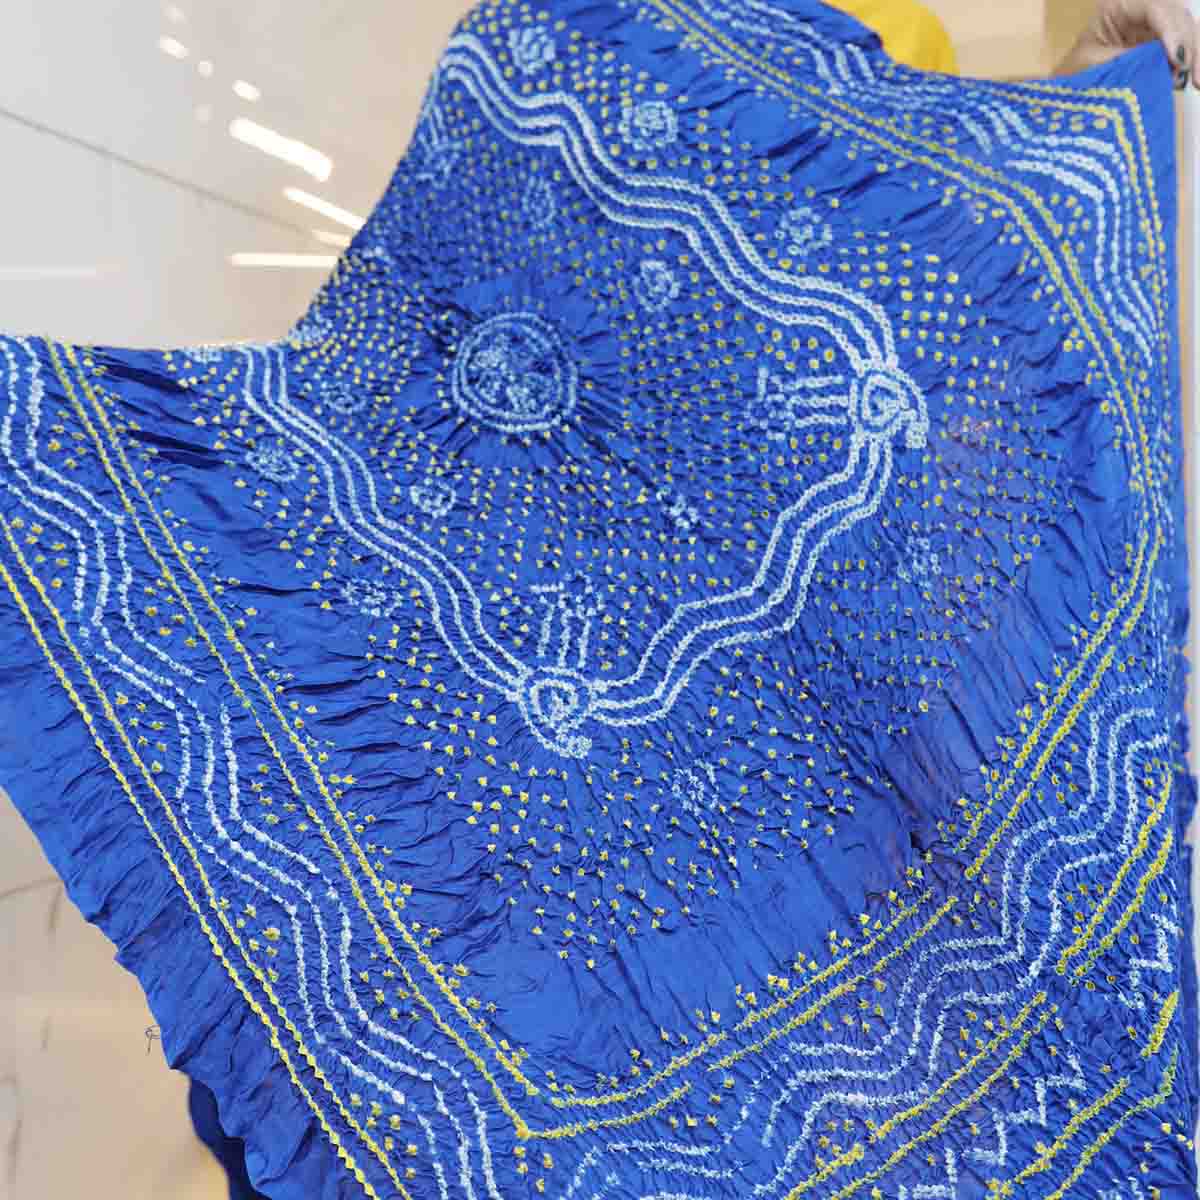 Bandhani Gajji Silk Dupatta With Chandrakhani Pattern Blue (4)